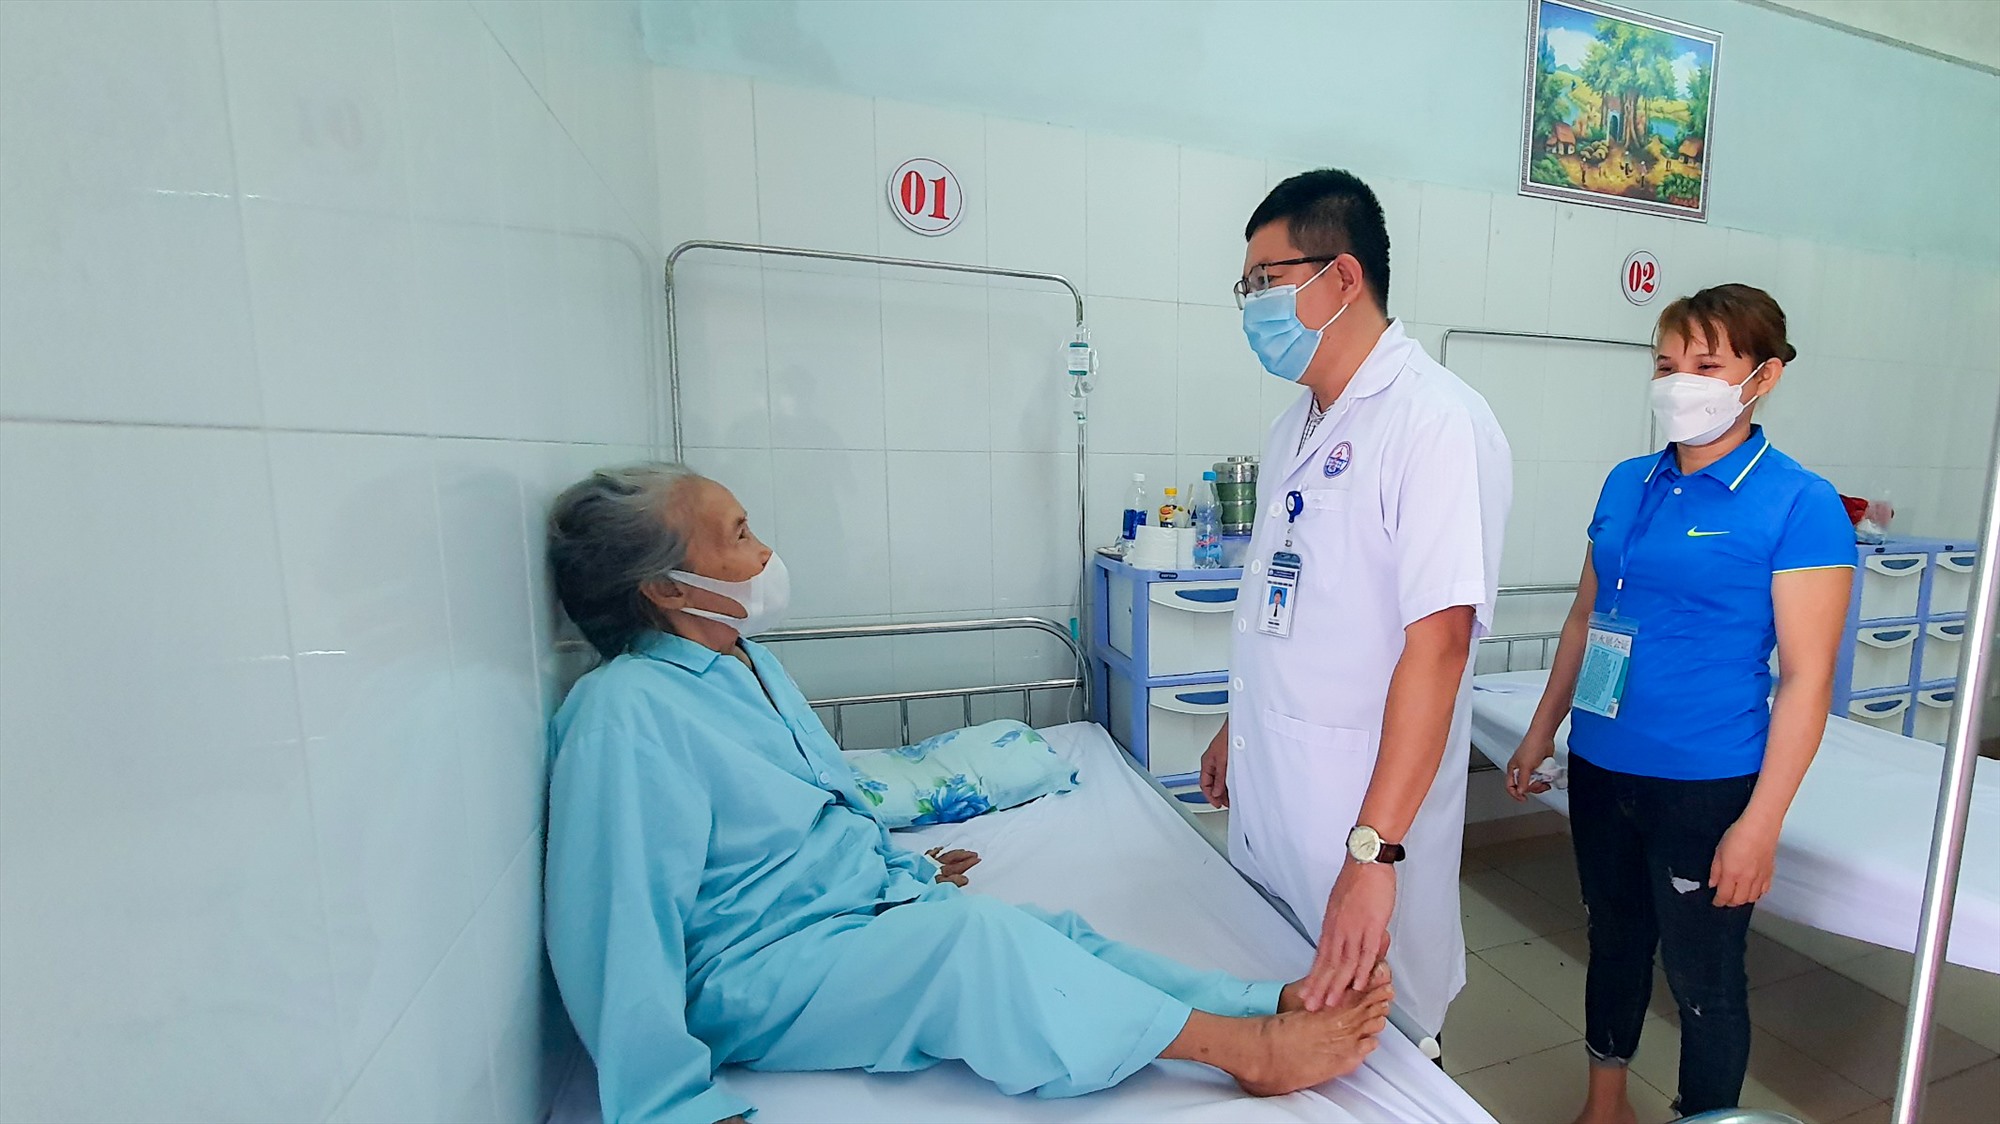 Bệnh nhân Phan Thị Xuyến có thể tự ngồi dậy và đi lại sau hơn 30 phút được thực hiện thủ thuật “đổ xi măng” sinh học điều trị tổn thương đốt sống - Ảnh: Lê Trường